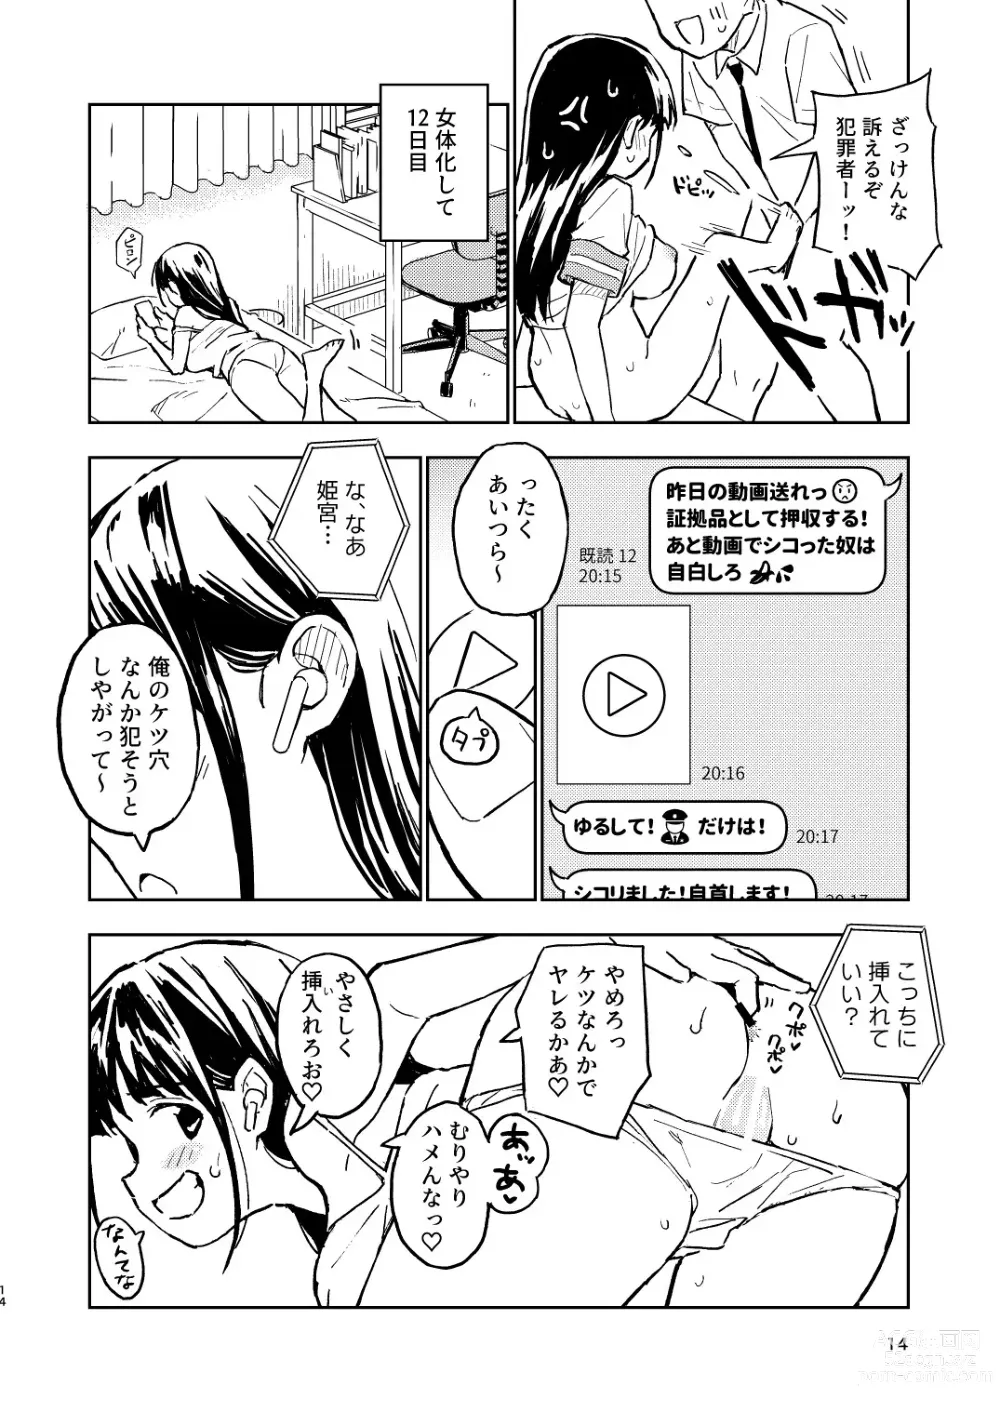 Page 14 of doujinshi 1-kagetsu Ninshin Shinakereba Otoko ni Modoreru Hanashi